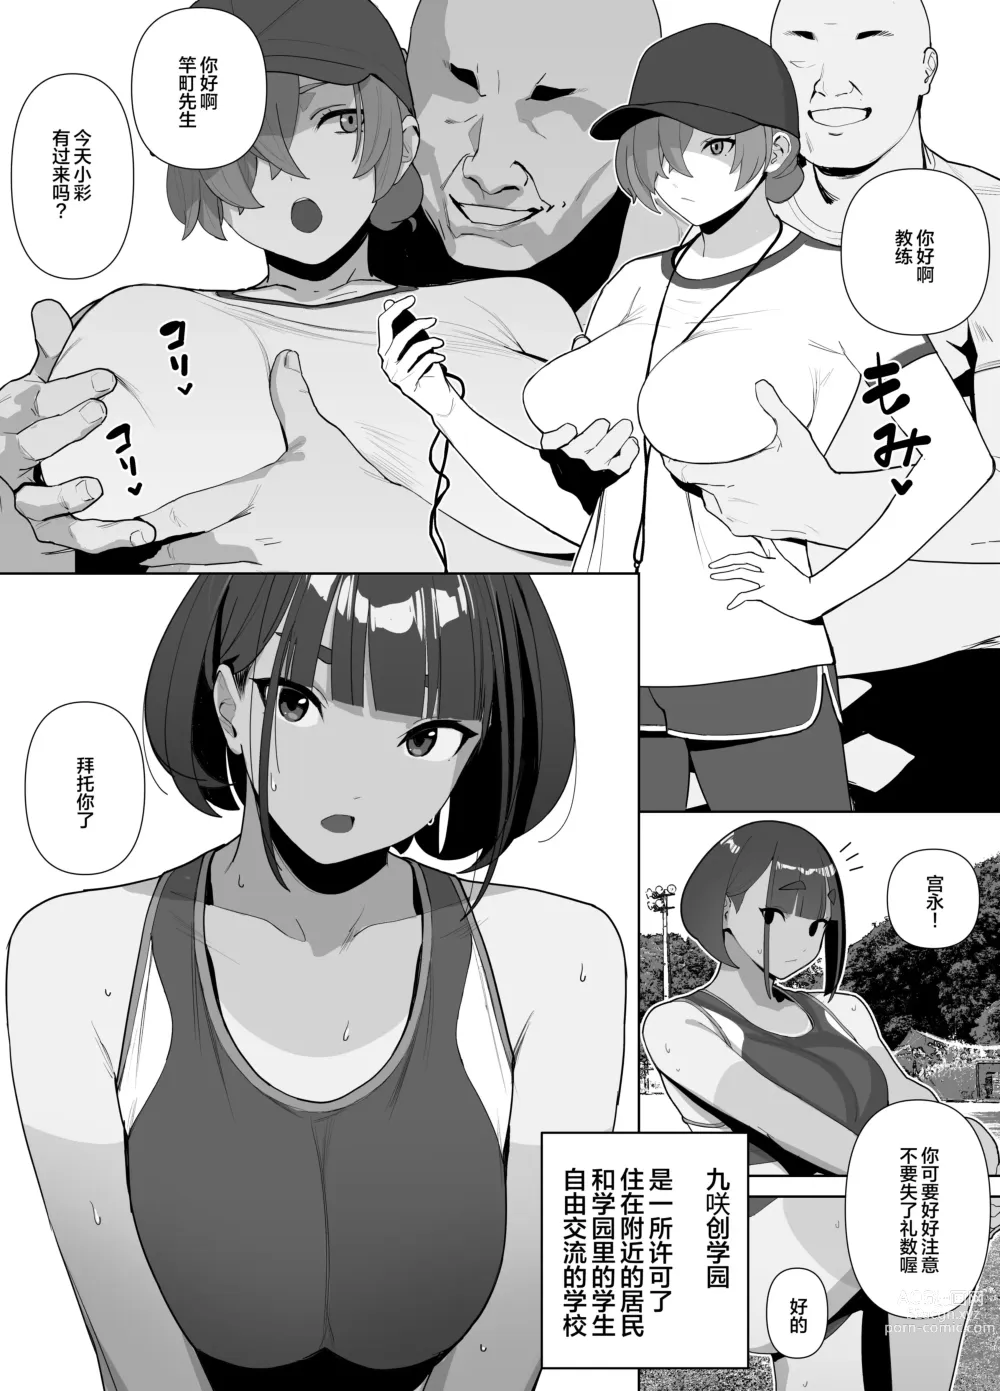 Page 91 of doujinshi Rikujobu-chan